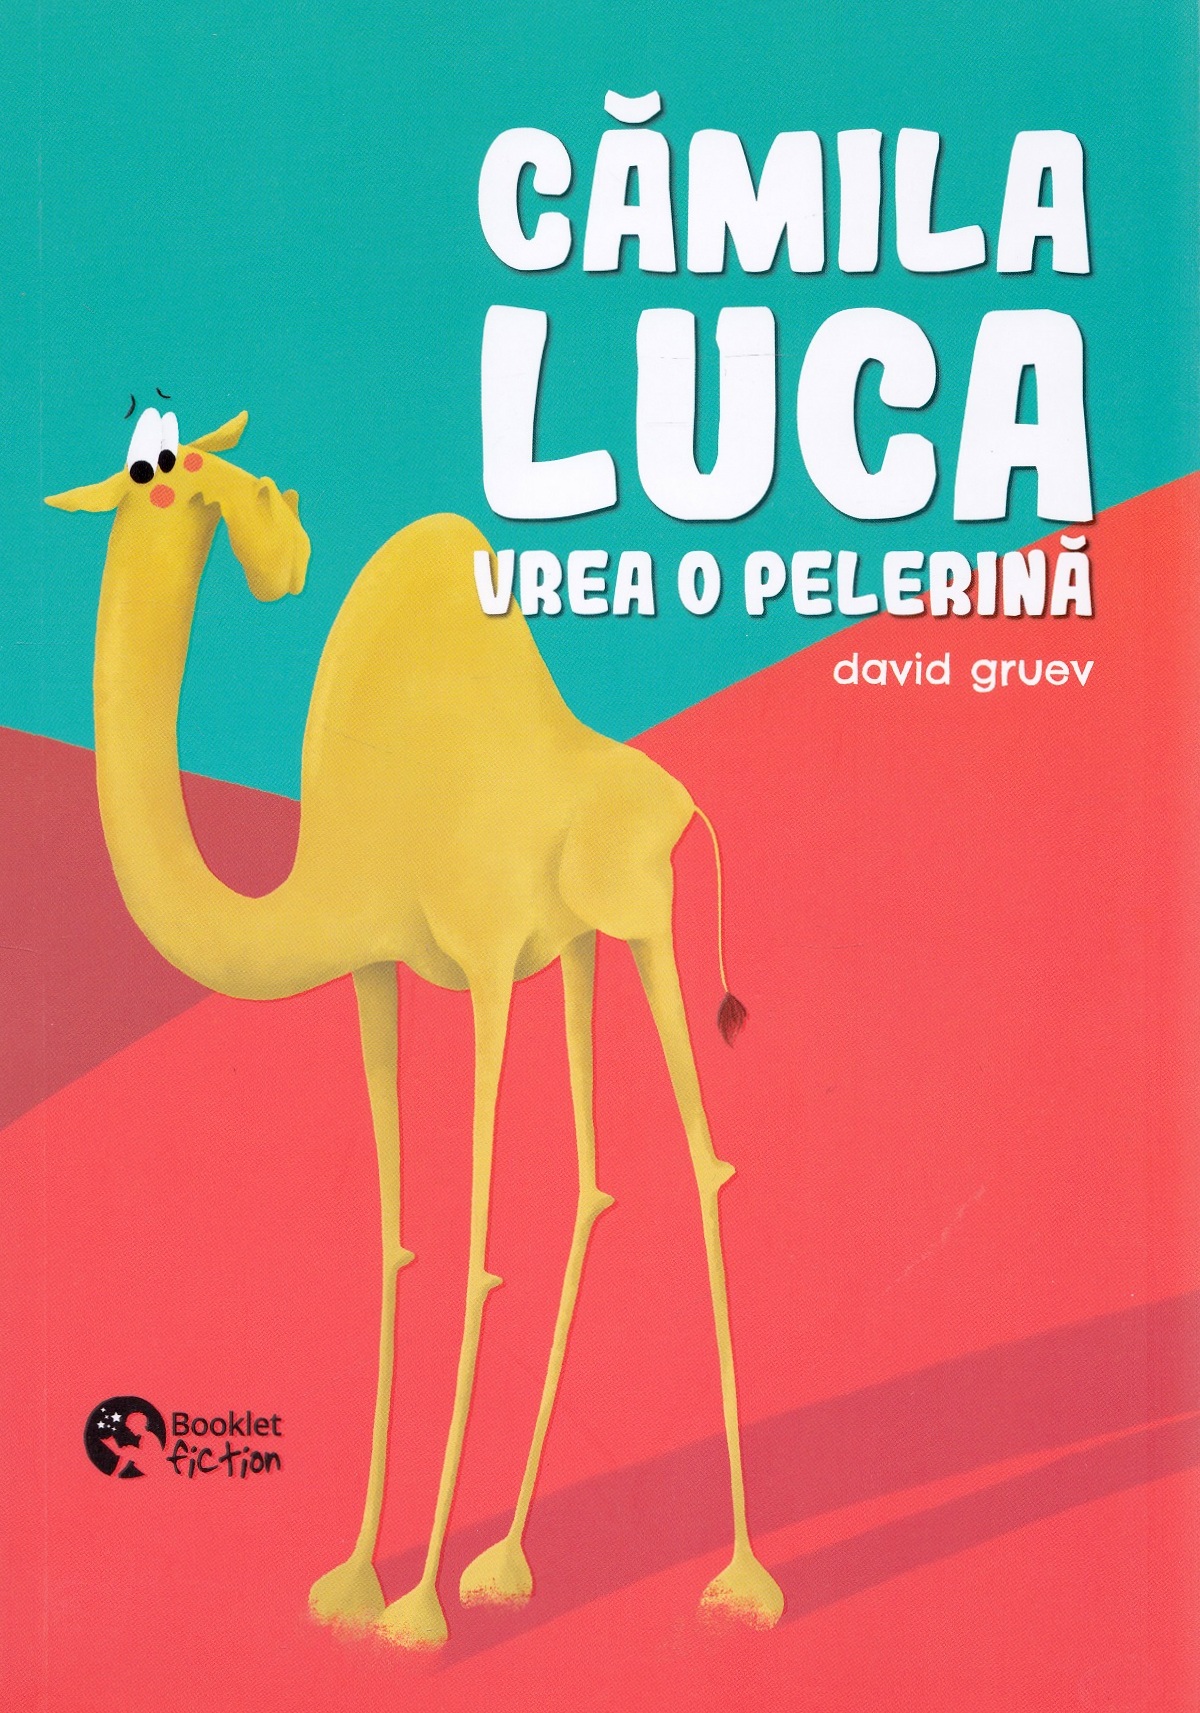 Camila Luca vrea o pelerina | David Gruev Booklet